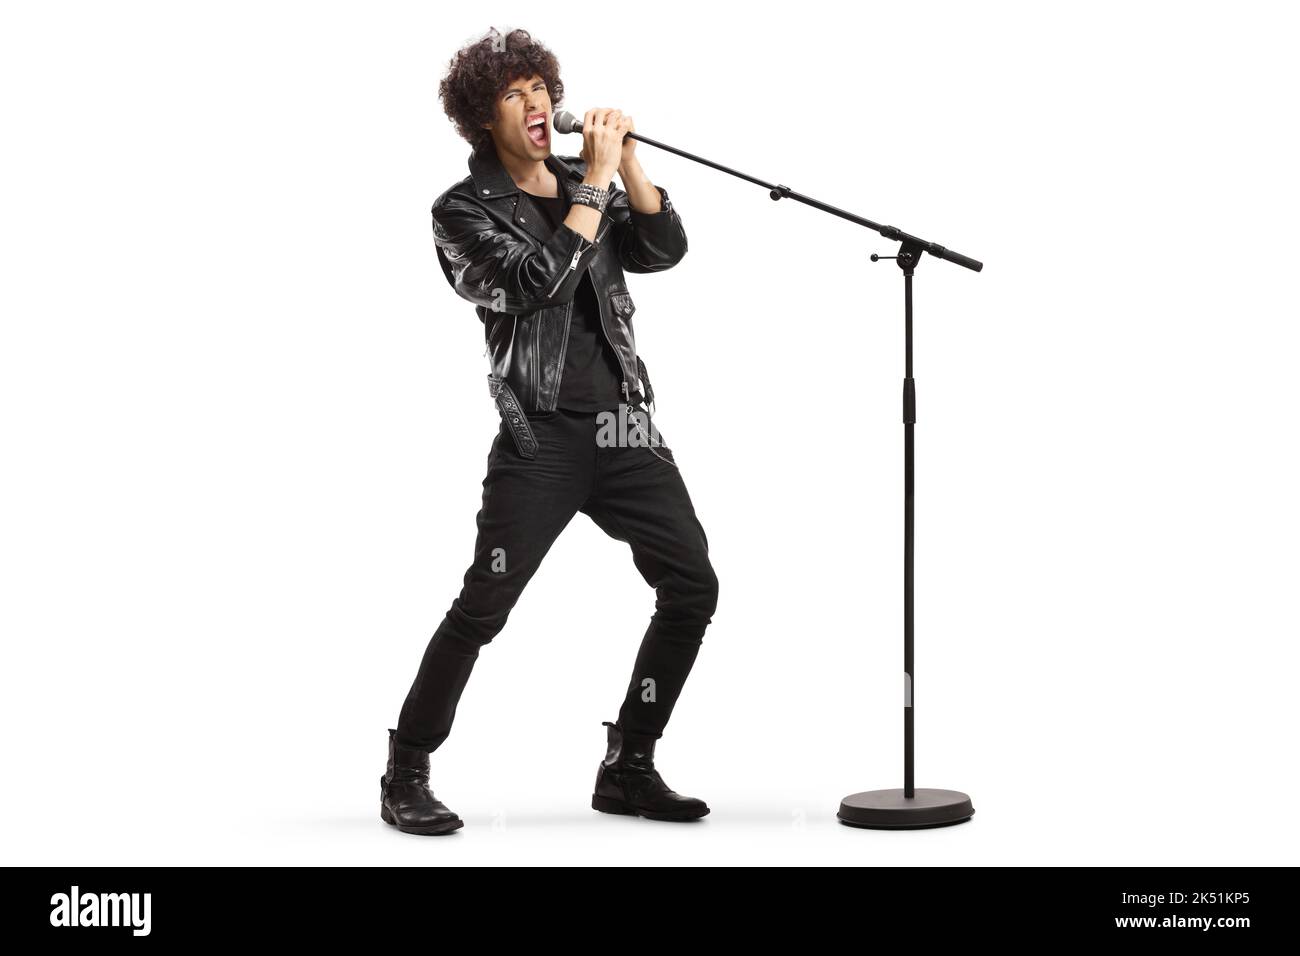 Rocksänger in einer Lederjacke, der laut auf einem Mikrofon singt, das auf weißem Hintergrund isoliert ist Stockfoto